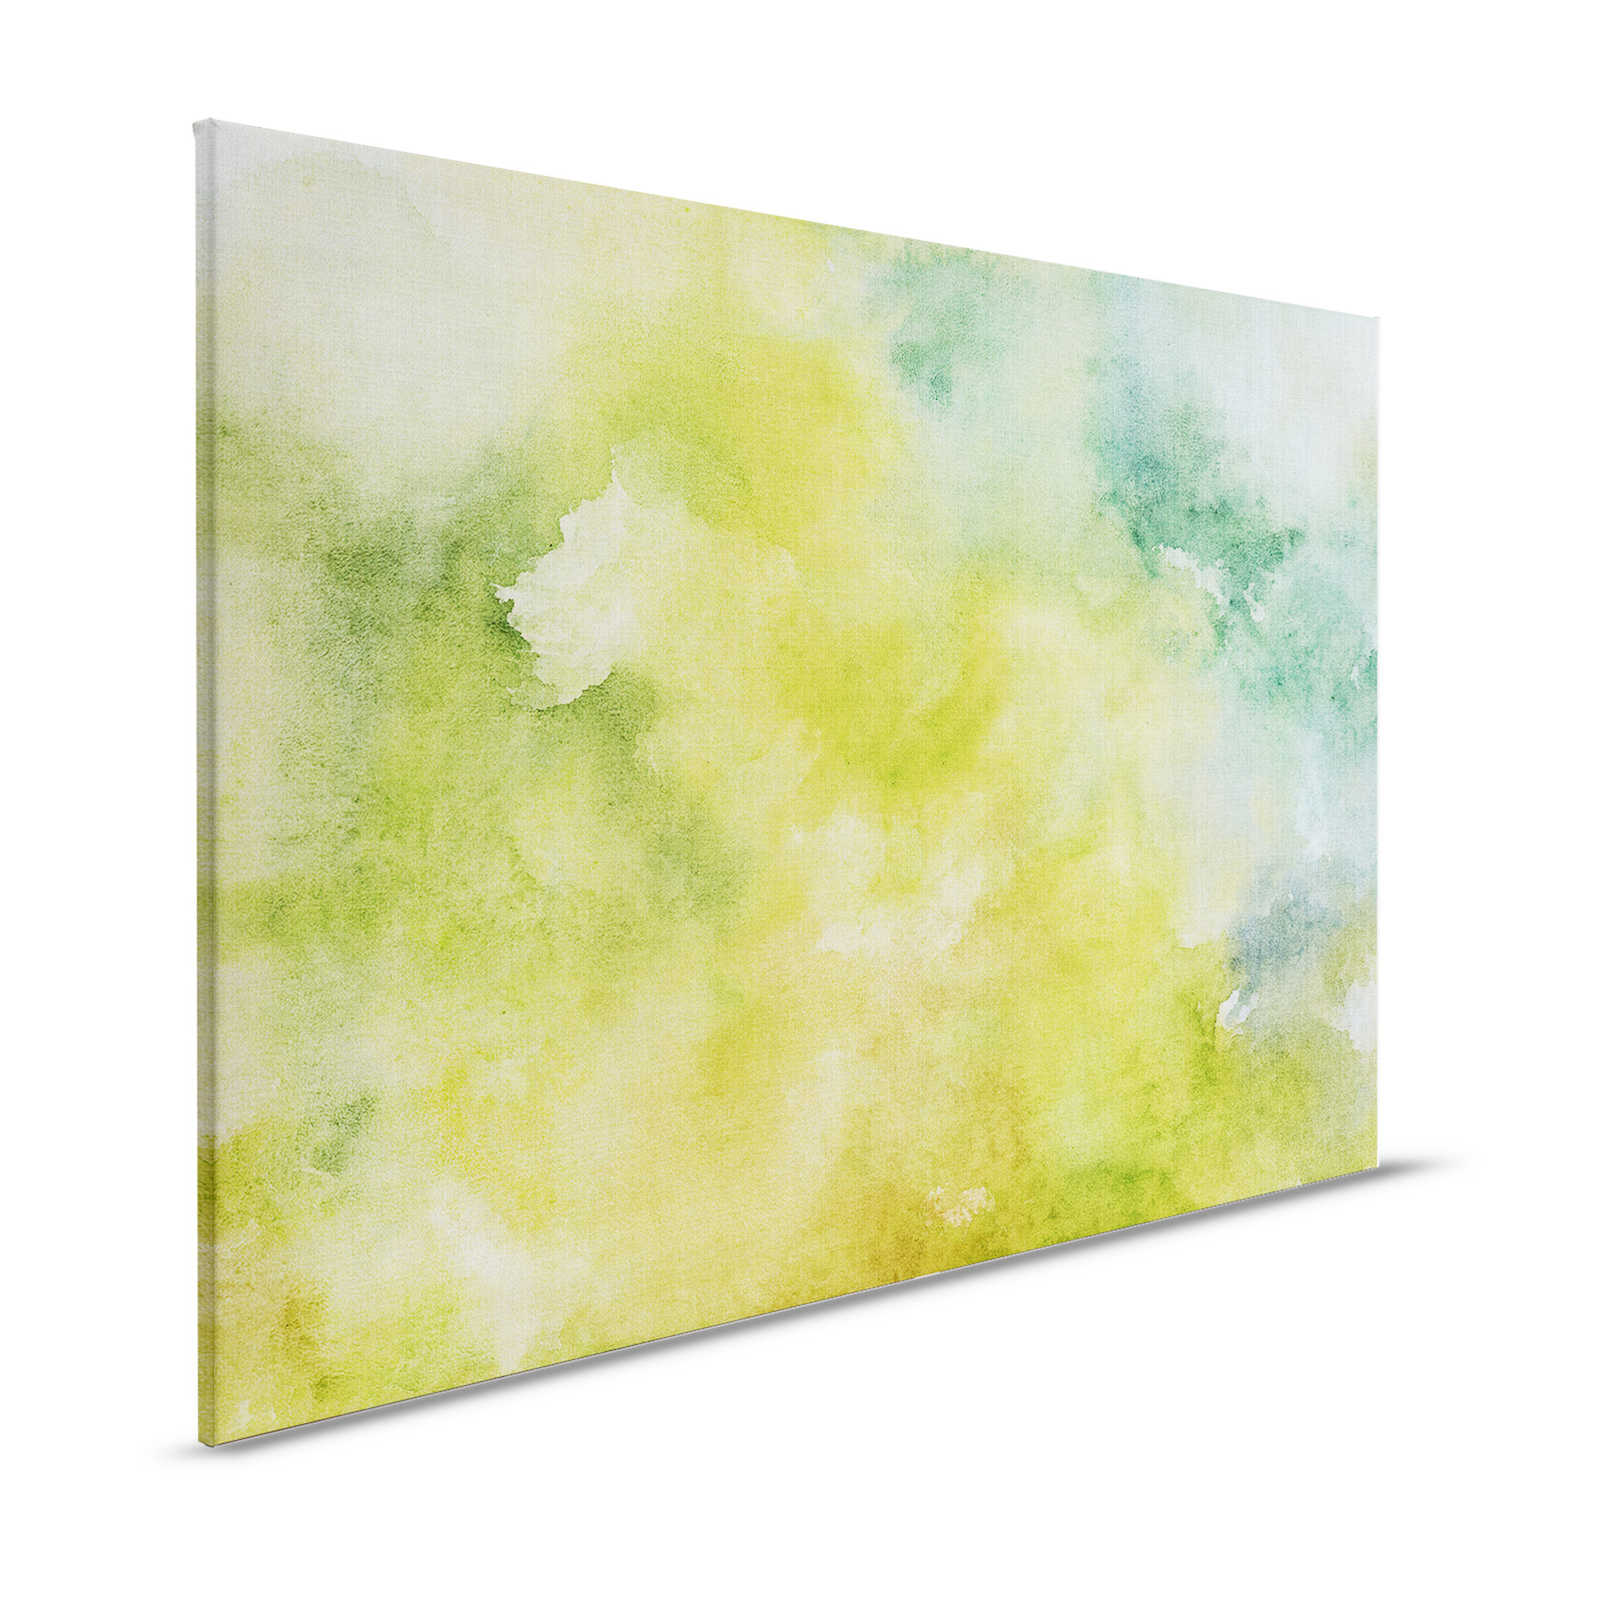 Aquarel 3 - Groen aquarel motief als canvas schilderij in naturel linnen look - 1.20 m x 0.80 m
